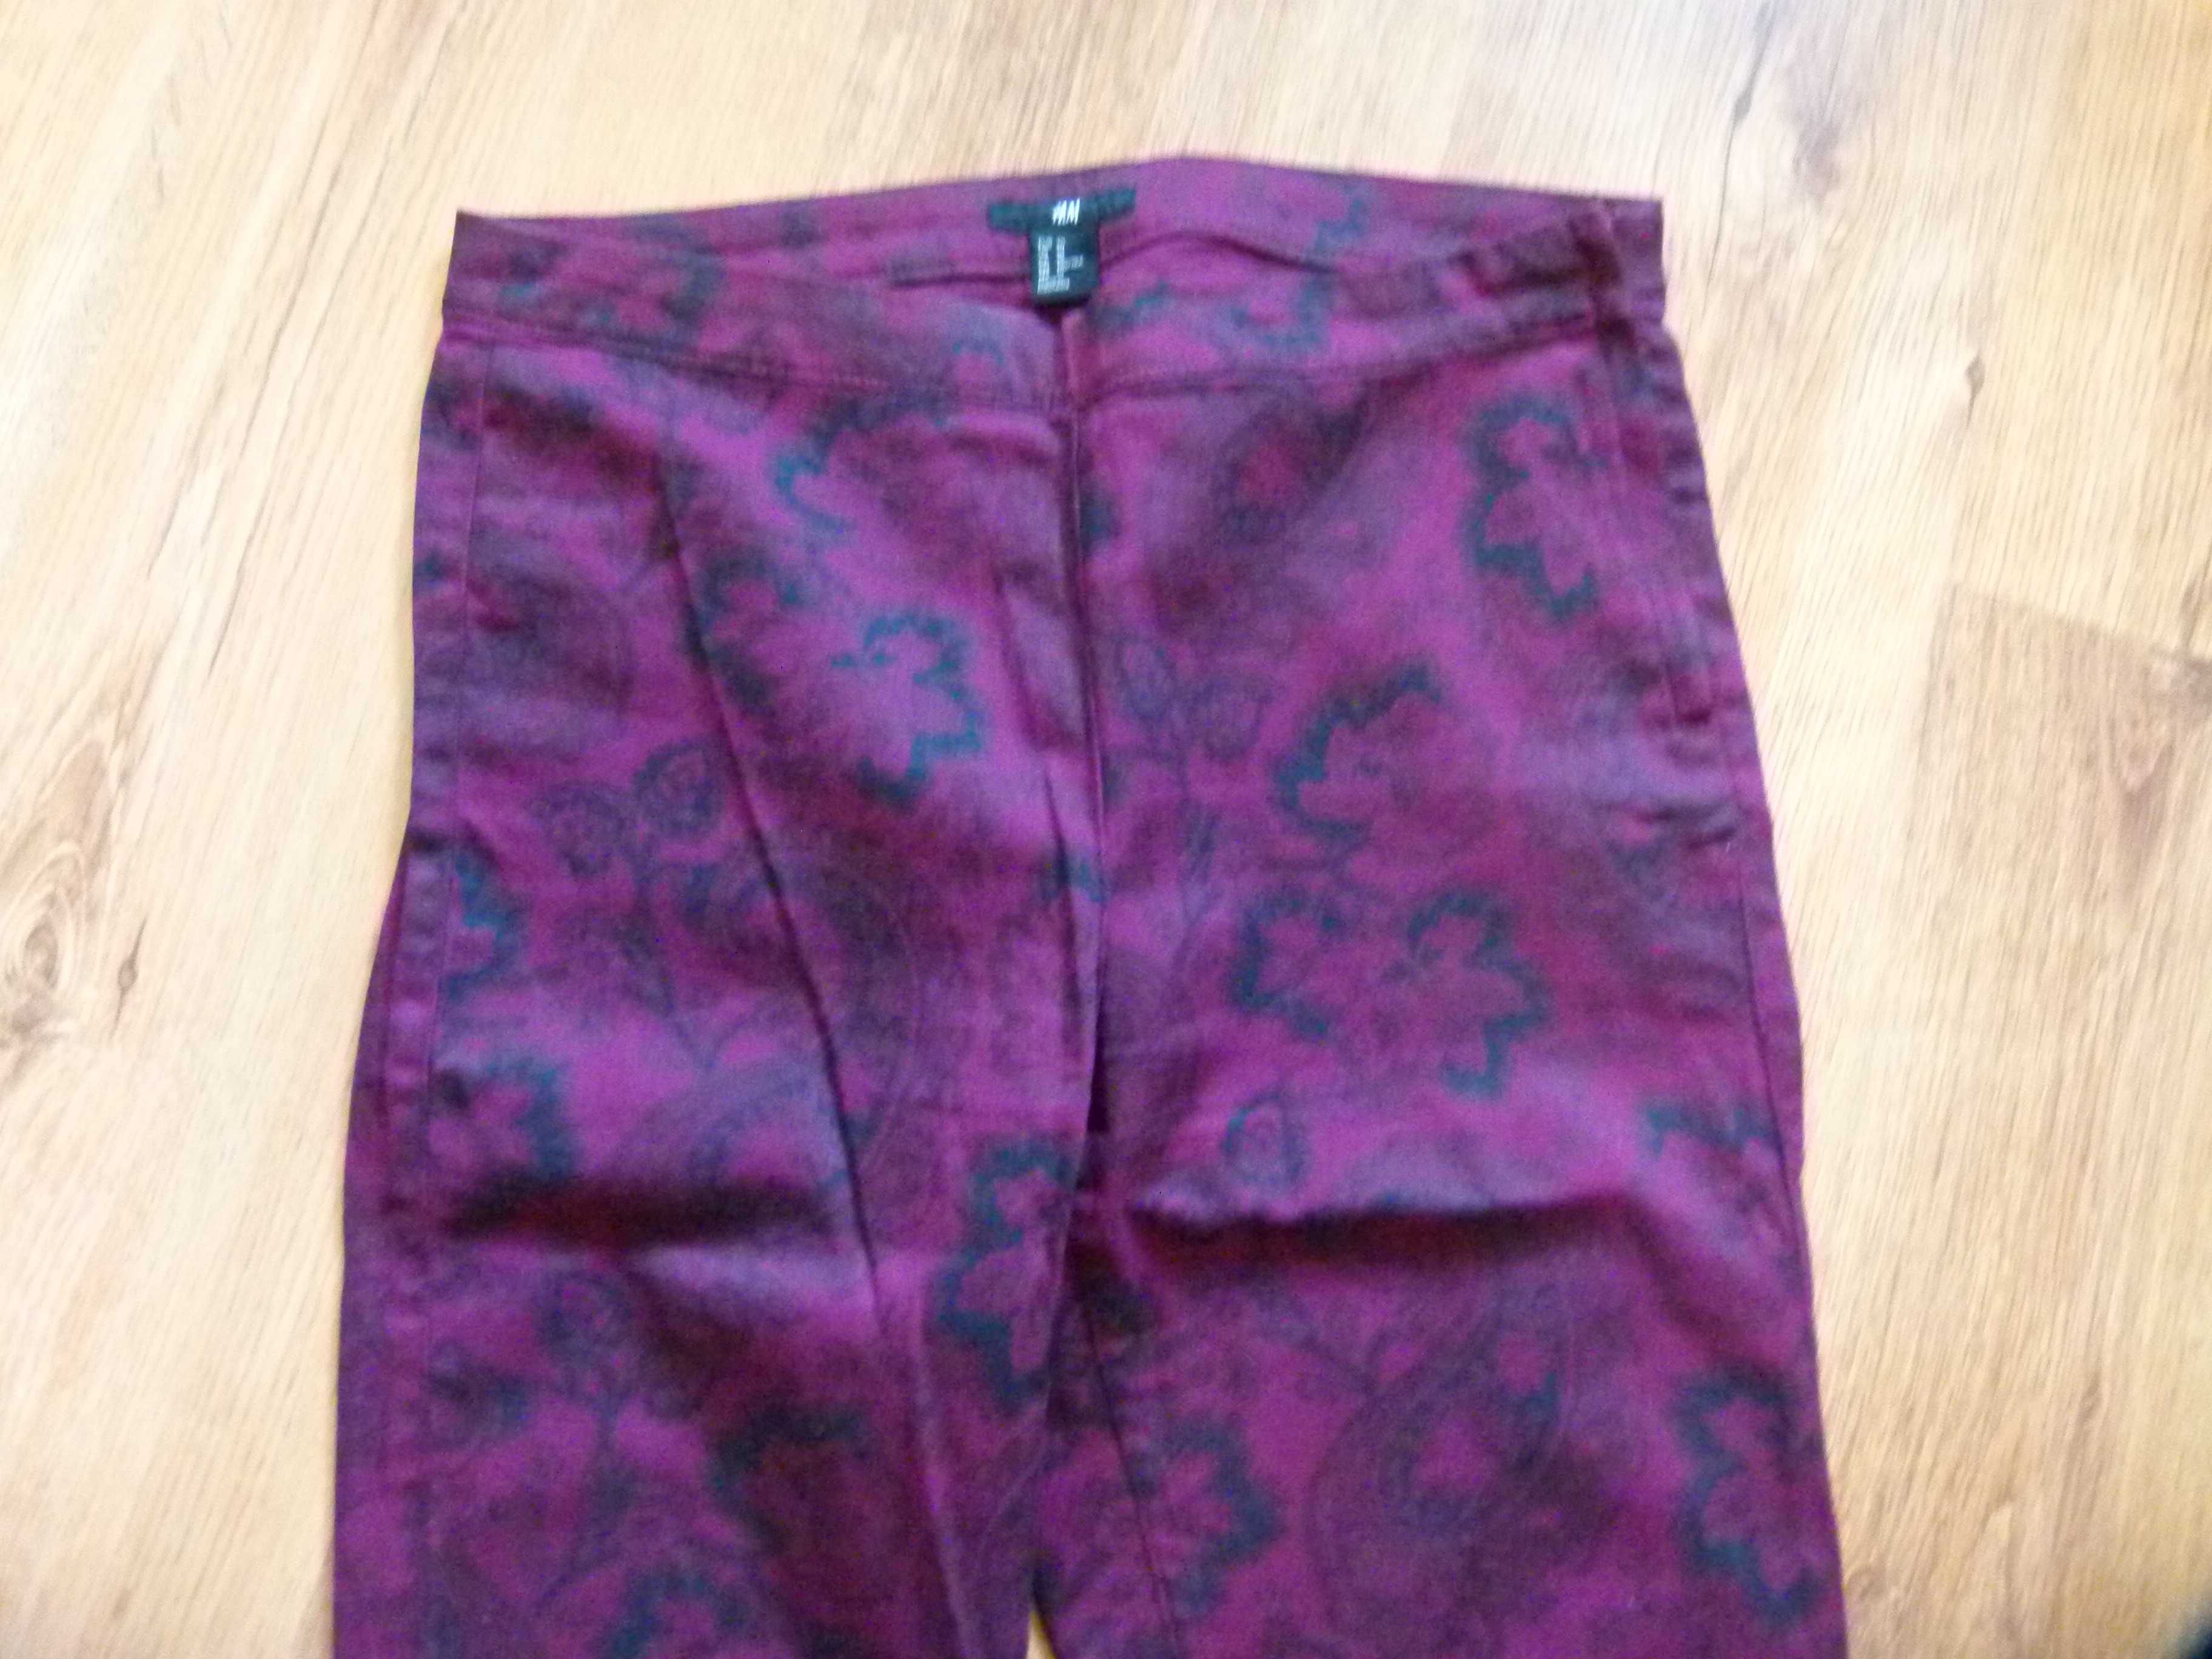 H&M spodnie cygaretki bordowe we wzorki damskie rozm L 40